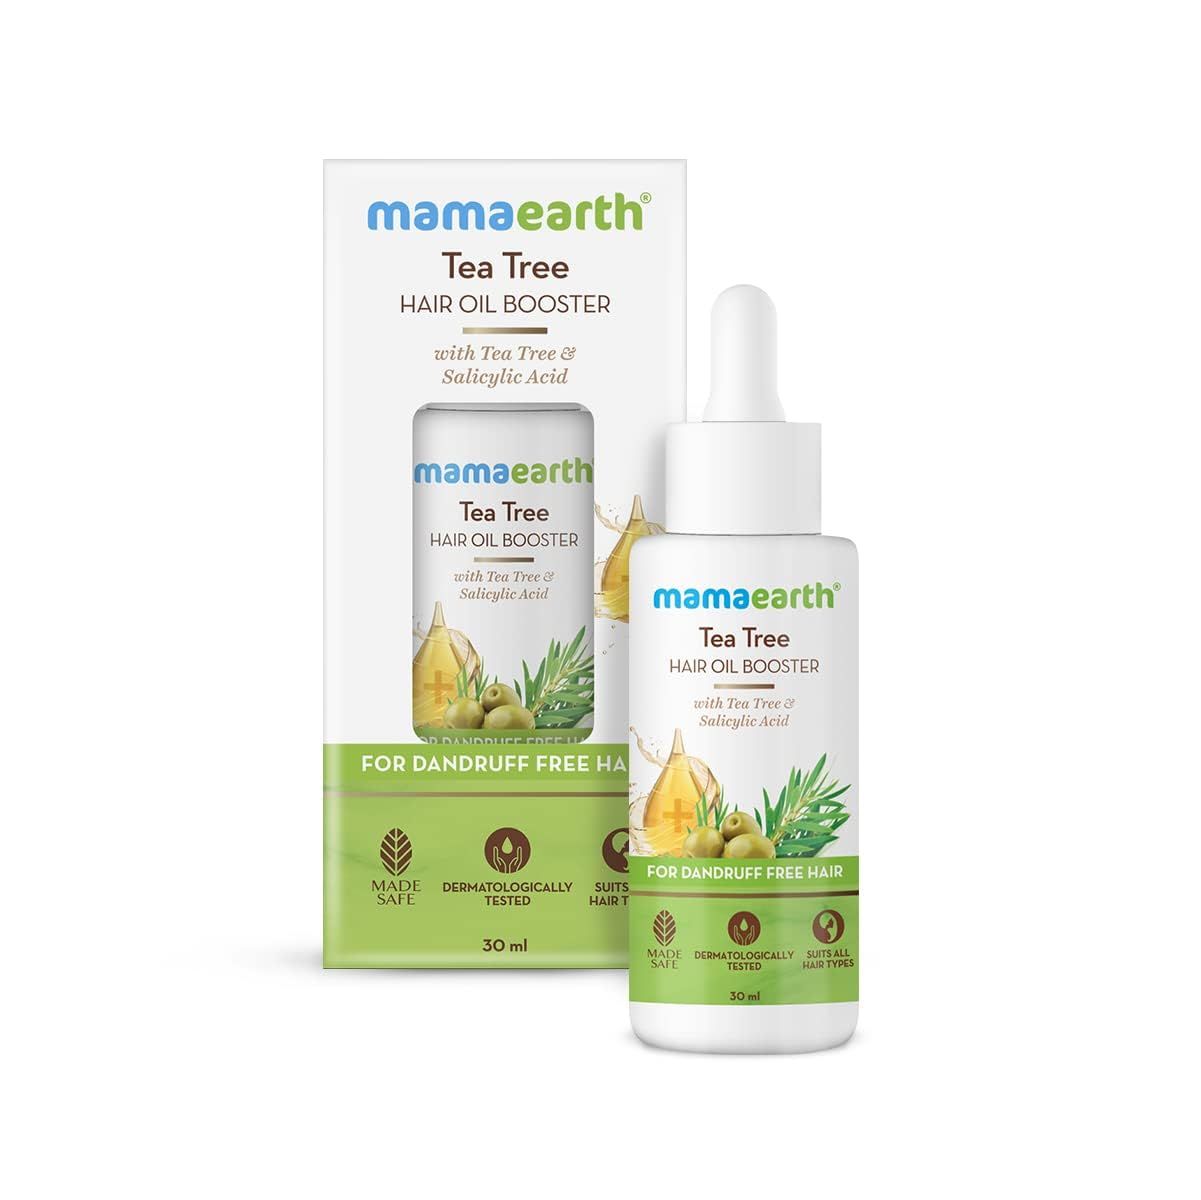 Mamaearth BT Tea Tree Hair Oil Booster 30ml